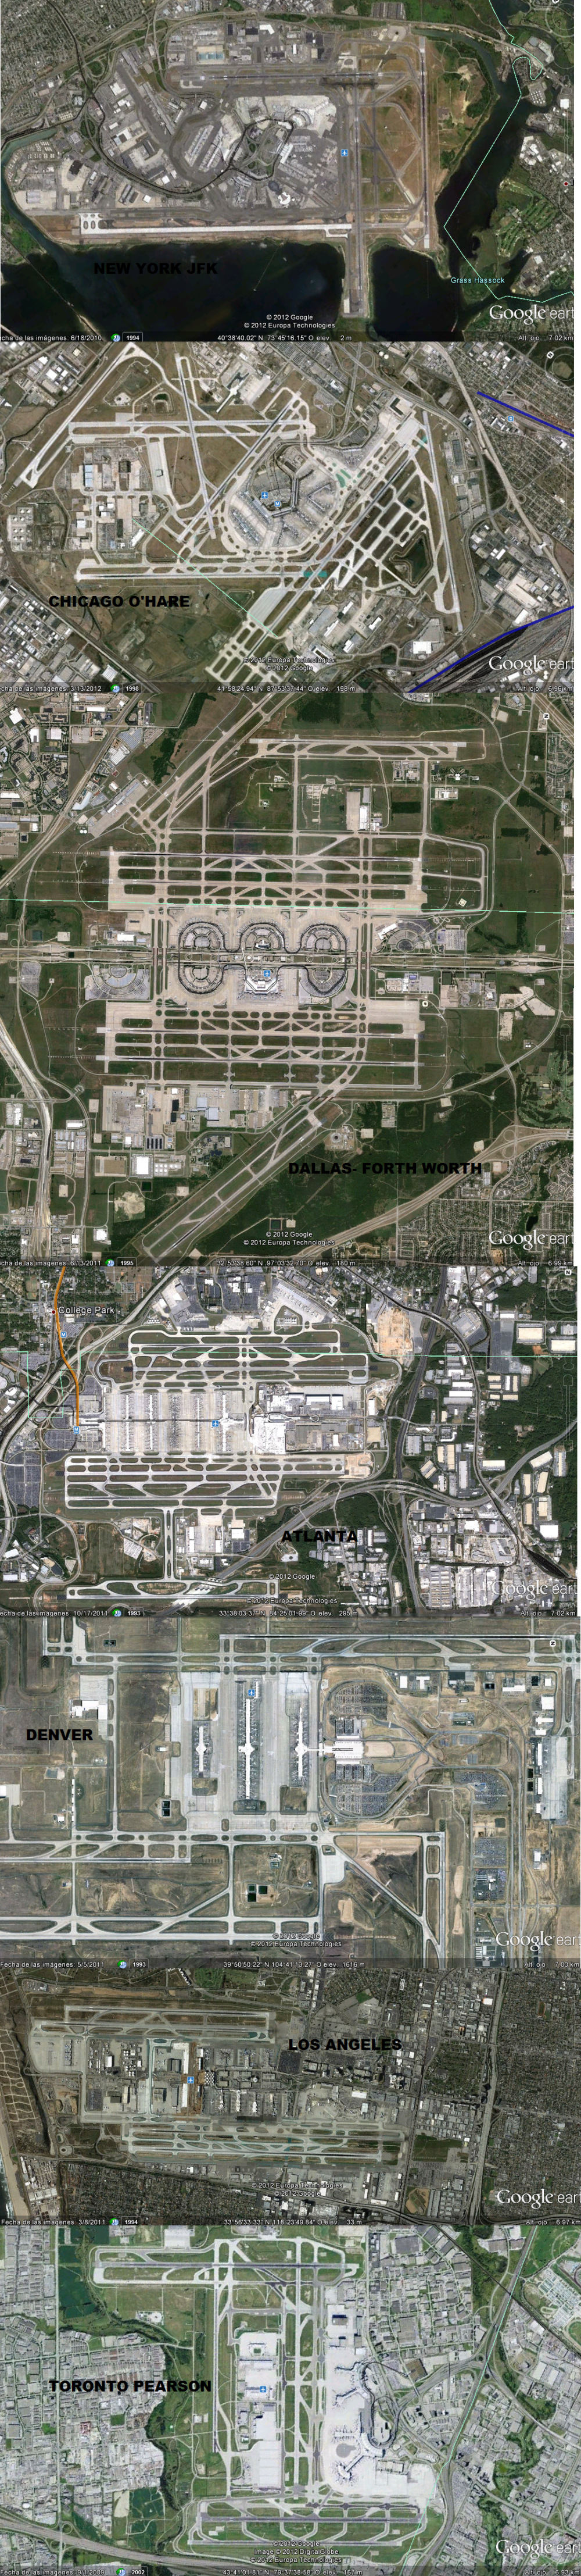 north-american airports comparison